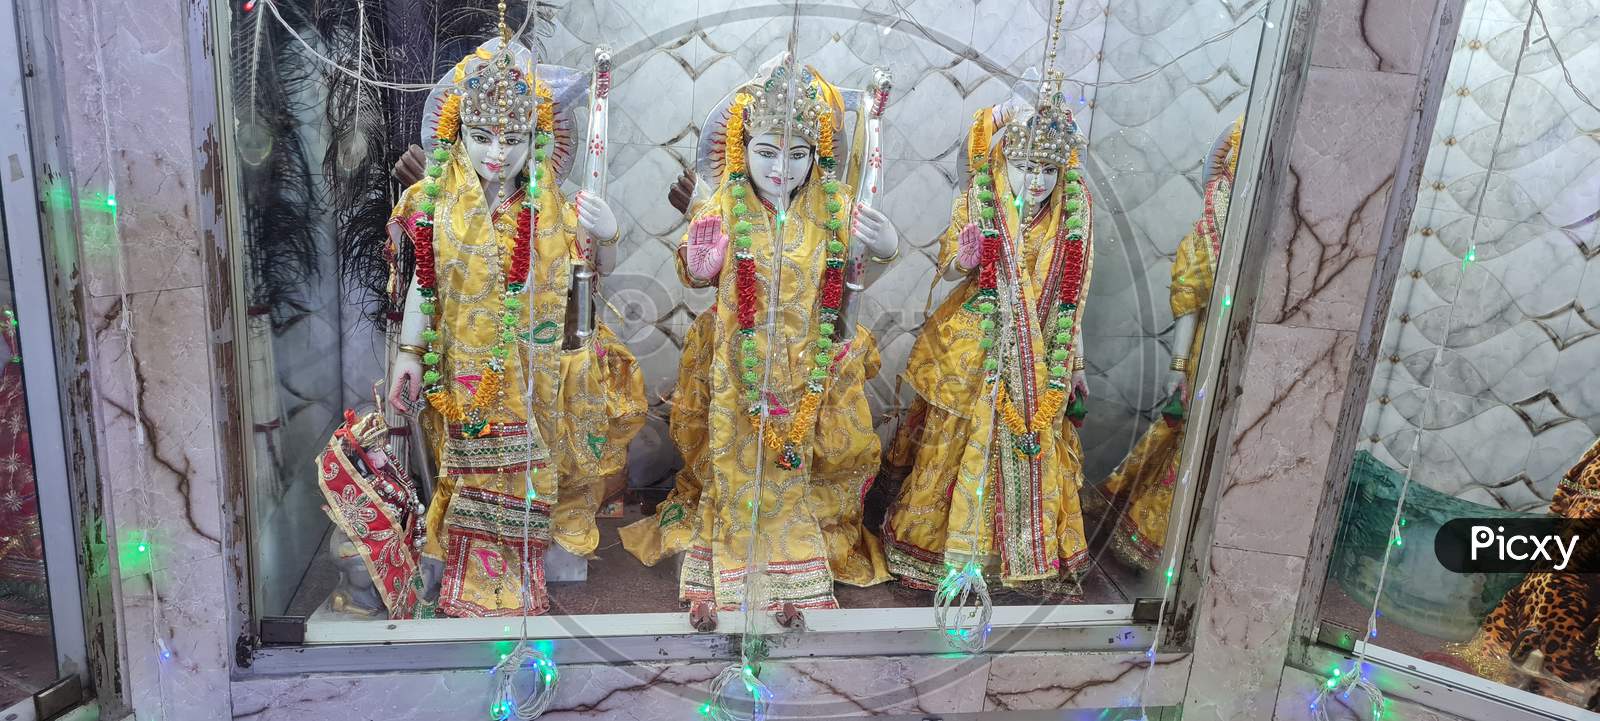 Lord shri Ram in temple